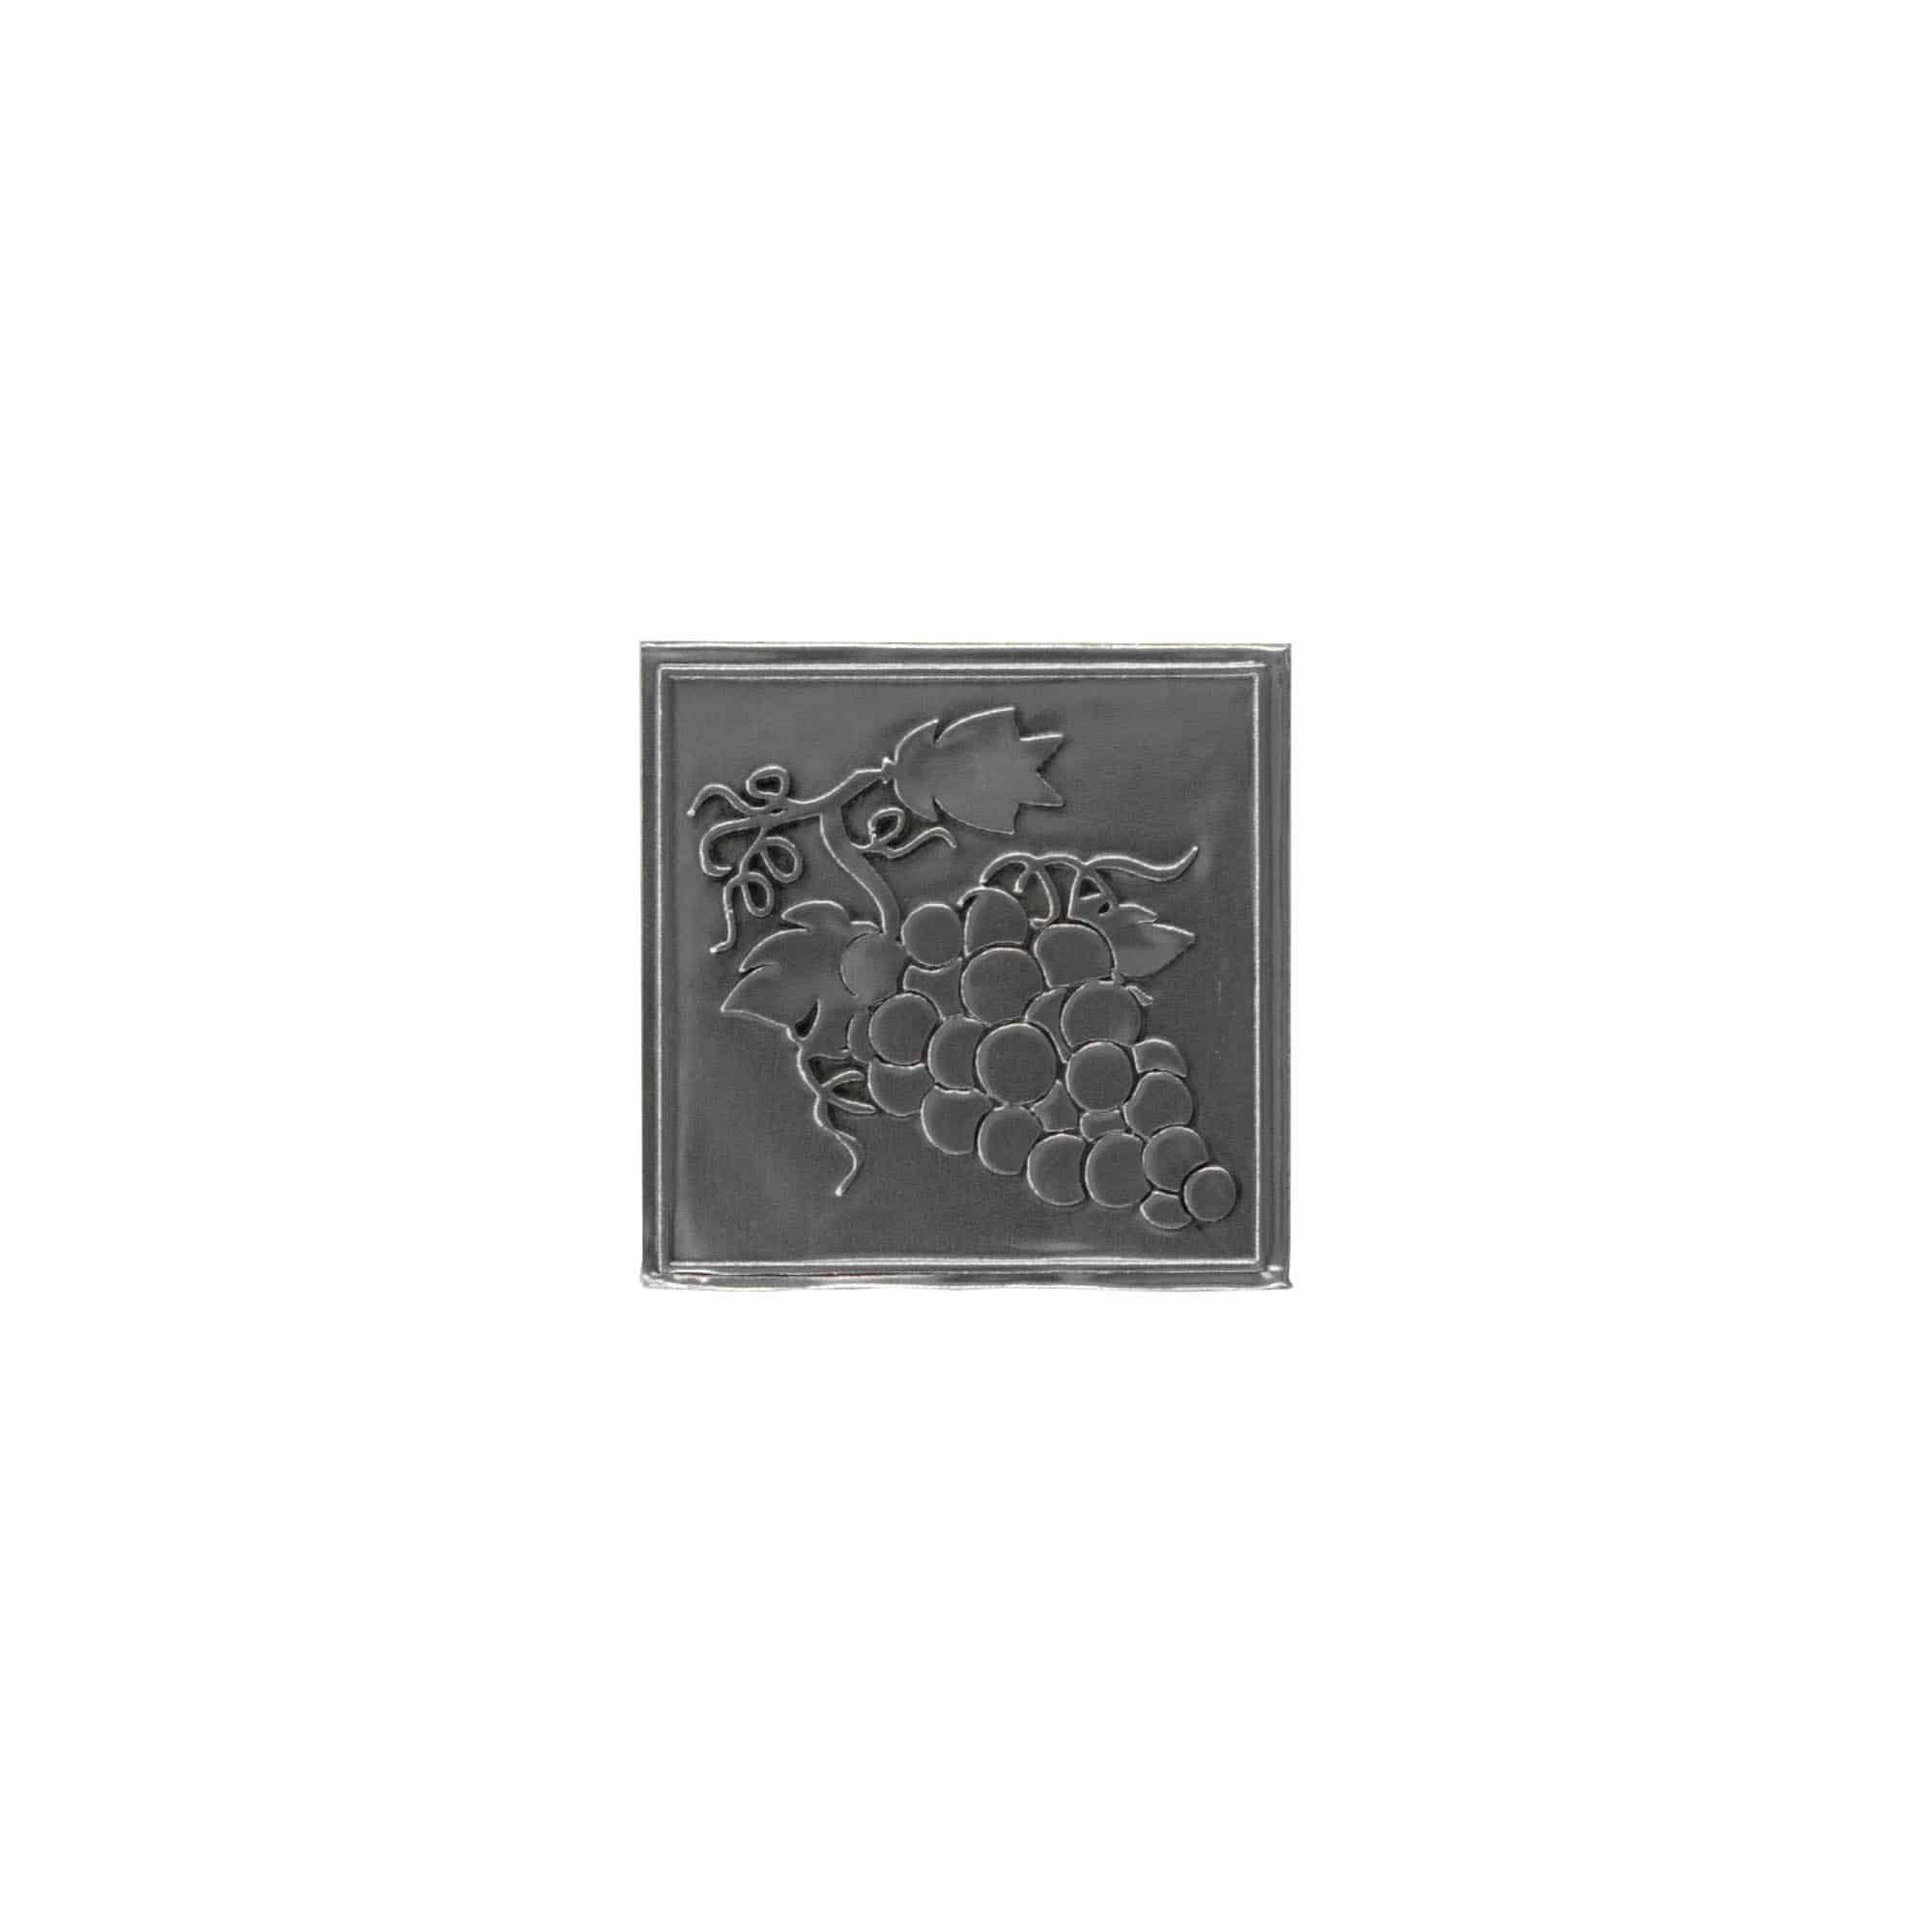 Cínový štítek 'Hrozen', čtvercový, kov, stříbrný